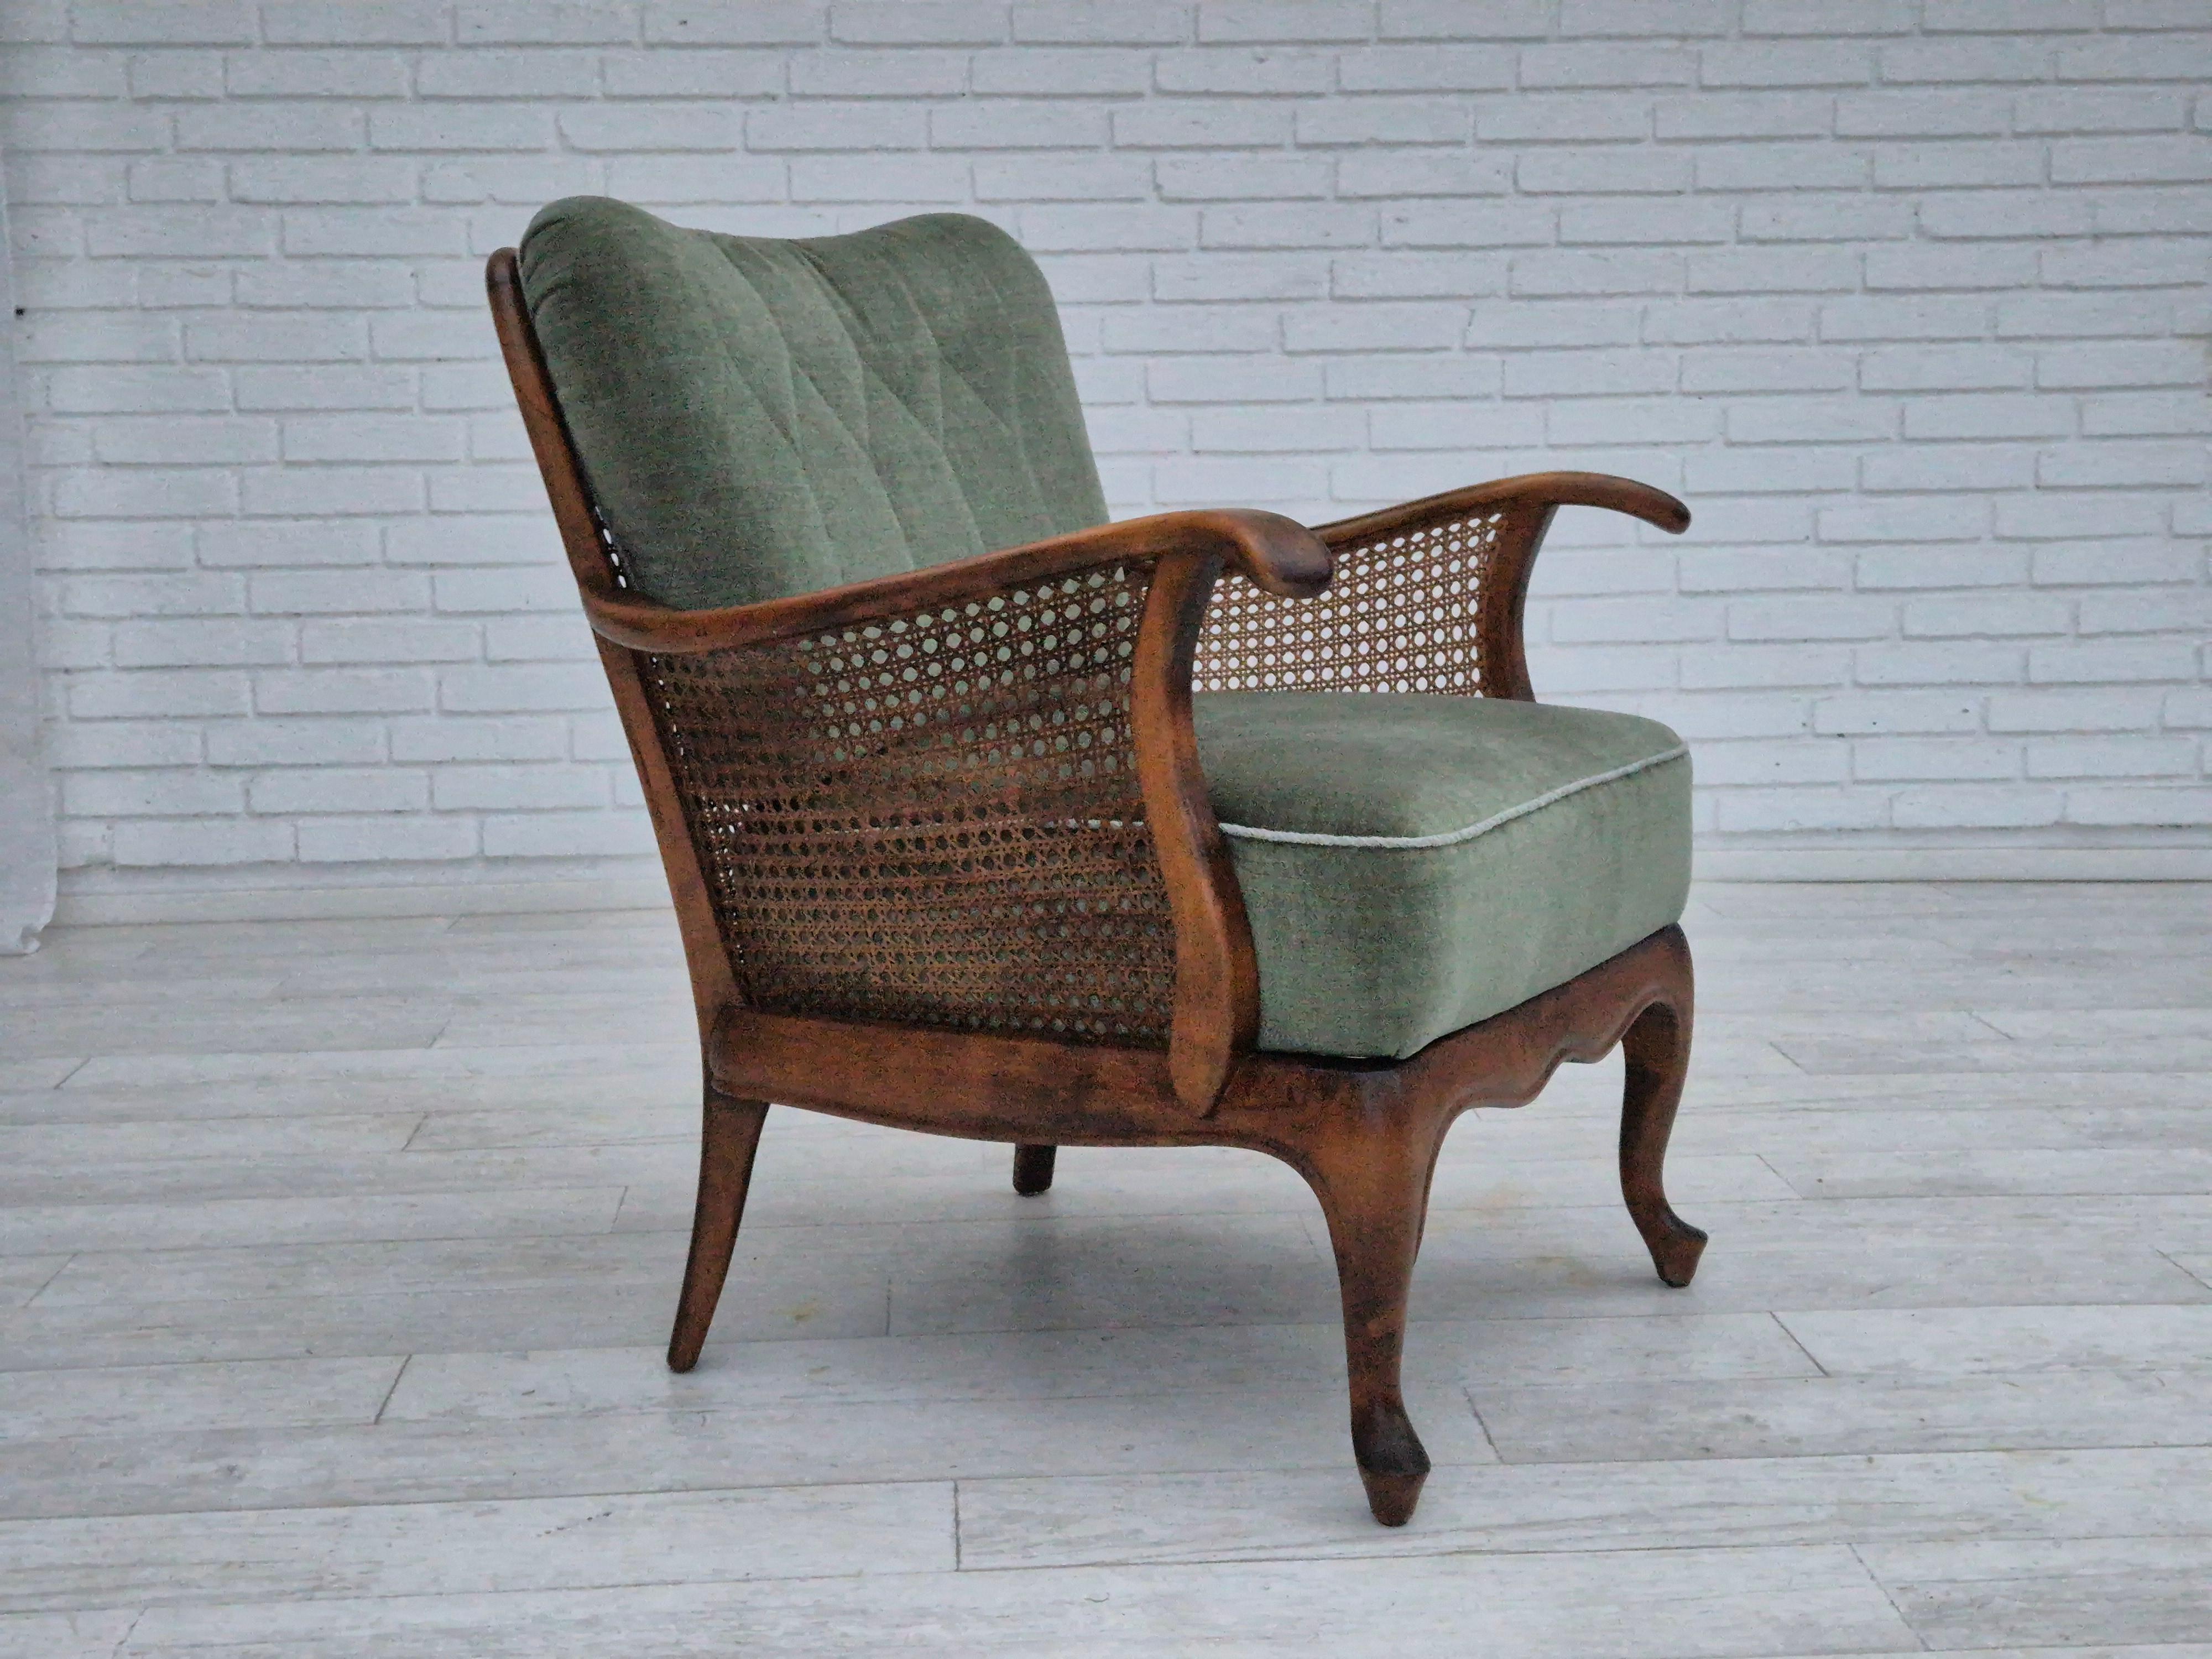 1950er Jahre, ein Paar dänische Sessel in sehr gutem Originalzustand: keine Gerüche und keine Flecken. Hellgrüner Möbelvelours, Eschenholz, Möbelnetz. Federn in den Sitzpolstern. Hergestellt von einem dänischen Möbelhersteller in den 1950-55er Jahren